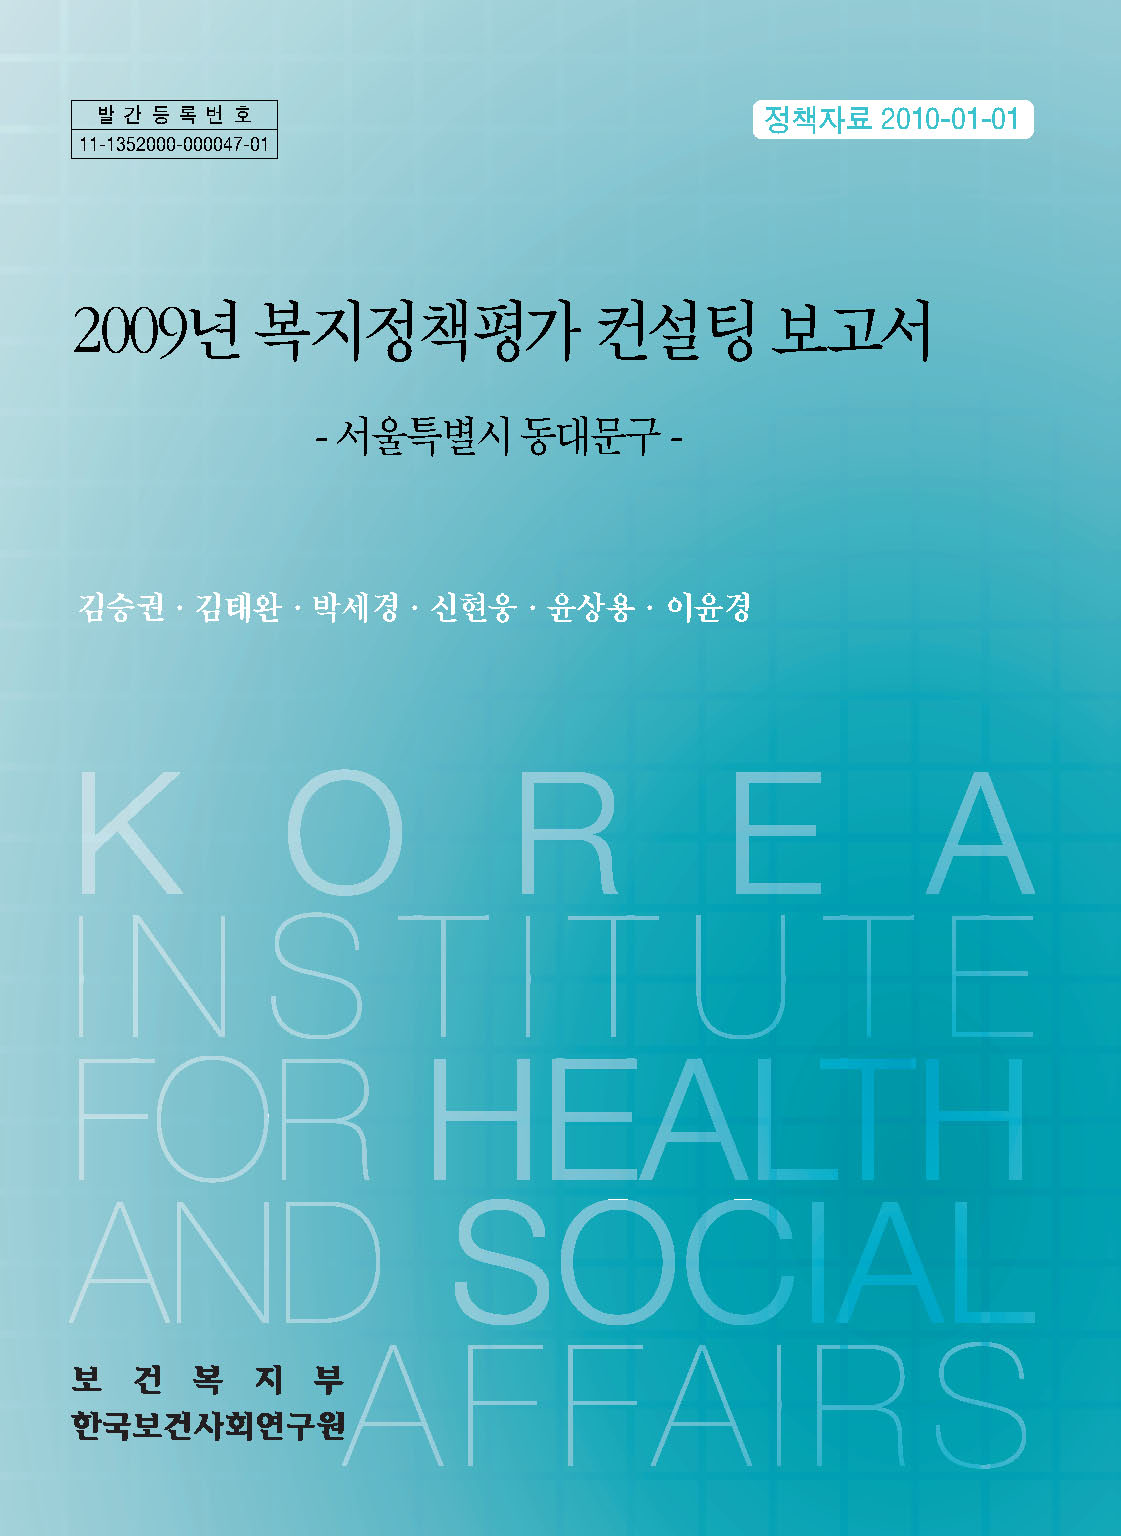 2009년 복지정책평가 컨설팅 보고서 -서울시 동대문구-